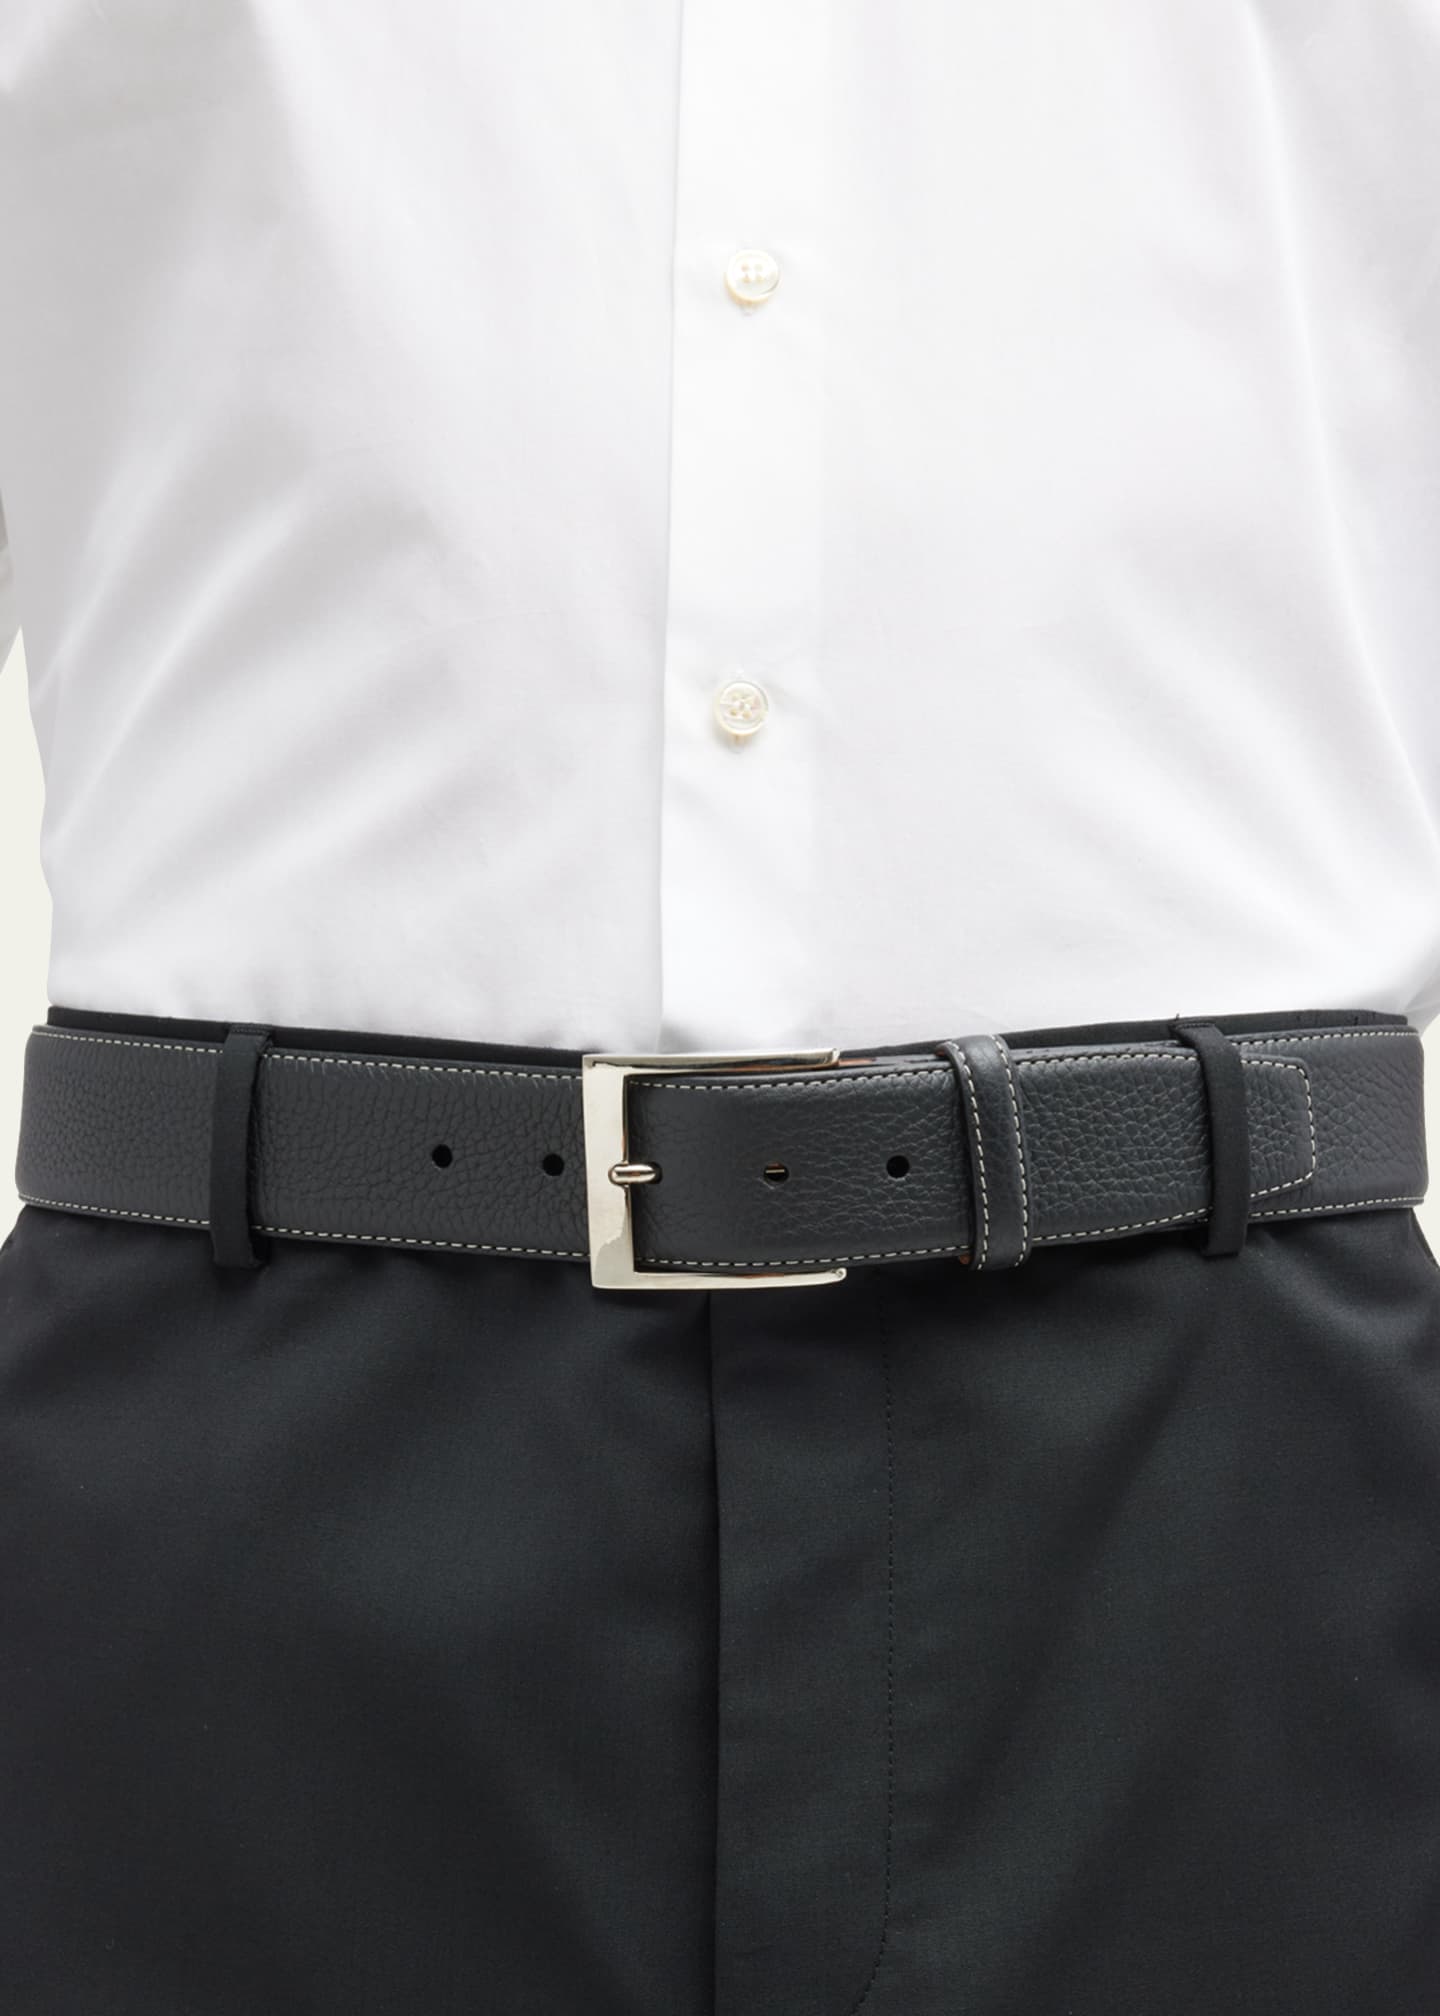 Simonnot Godard Men's Lagun Grained Leather Belt, 40mm - Bergdorf Goodman